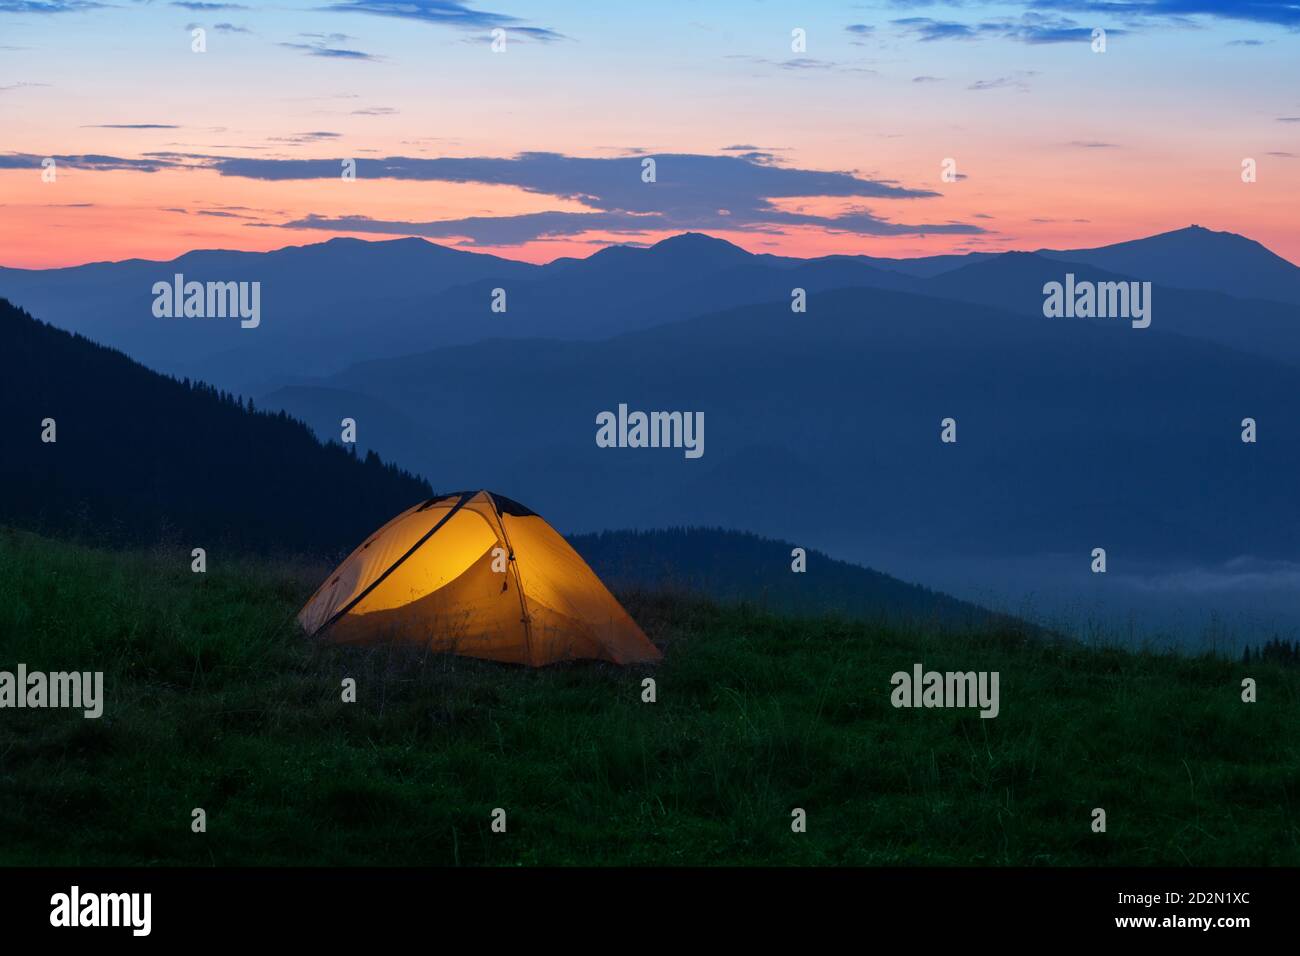 Orange tourist tent illuminated from inside on mountain Stock Photo